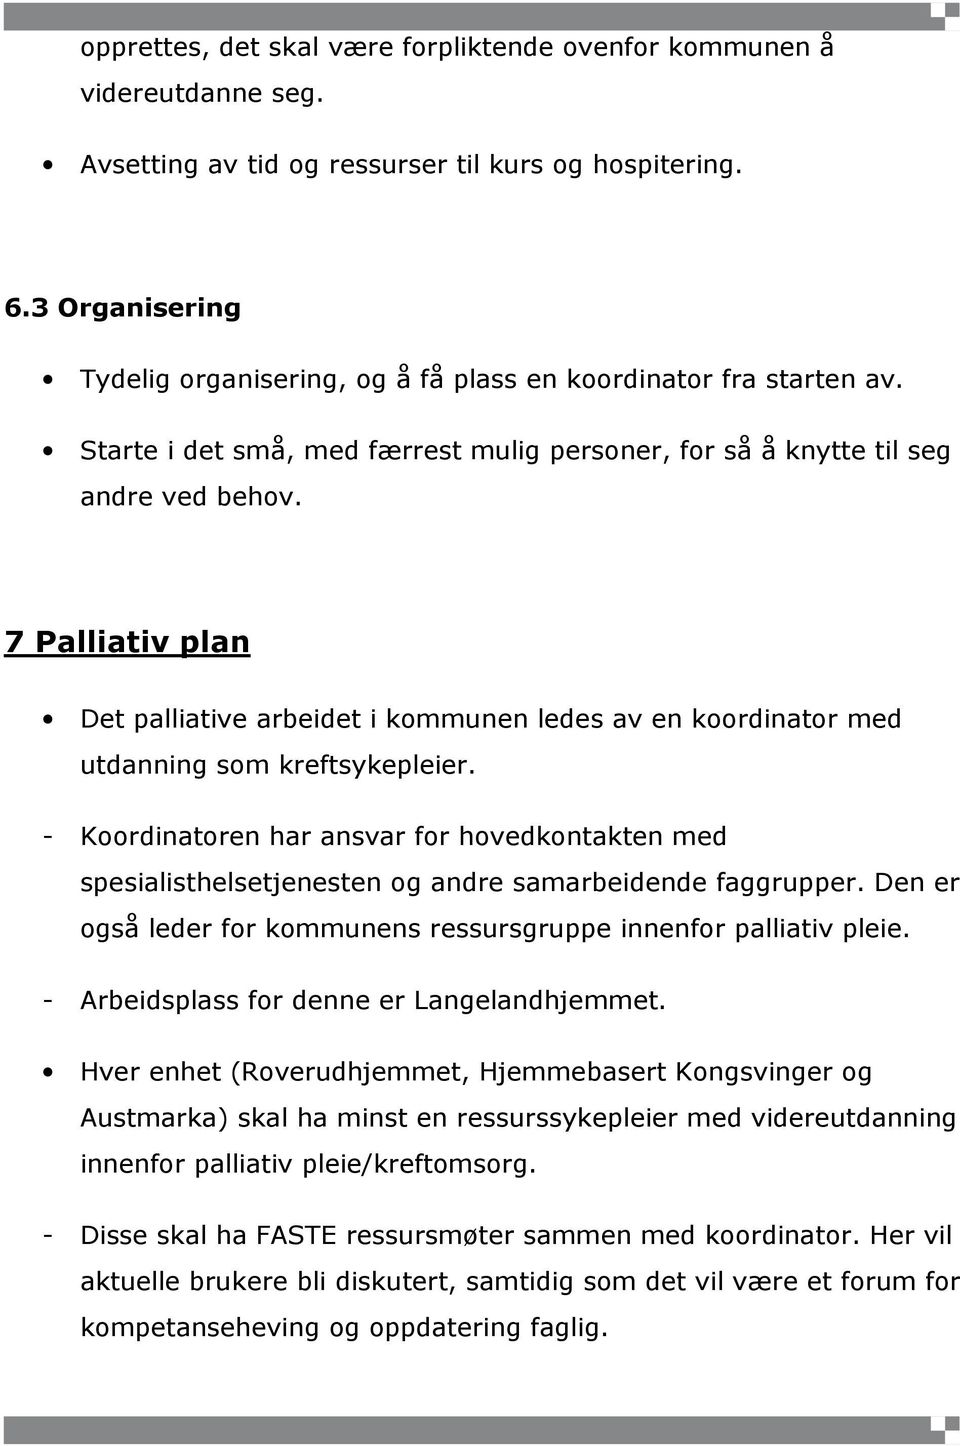 7 Palliativ plan Det palliative arbeidet i kommunen ledes av en koordinator med utdanning som kreftsykepleier.